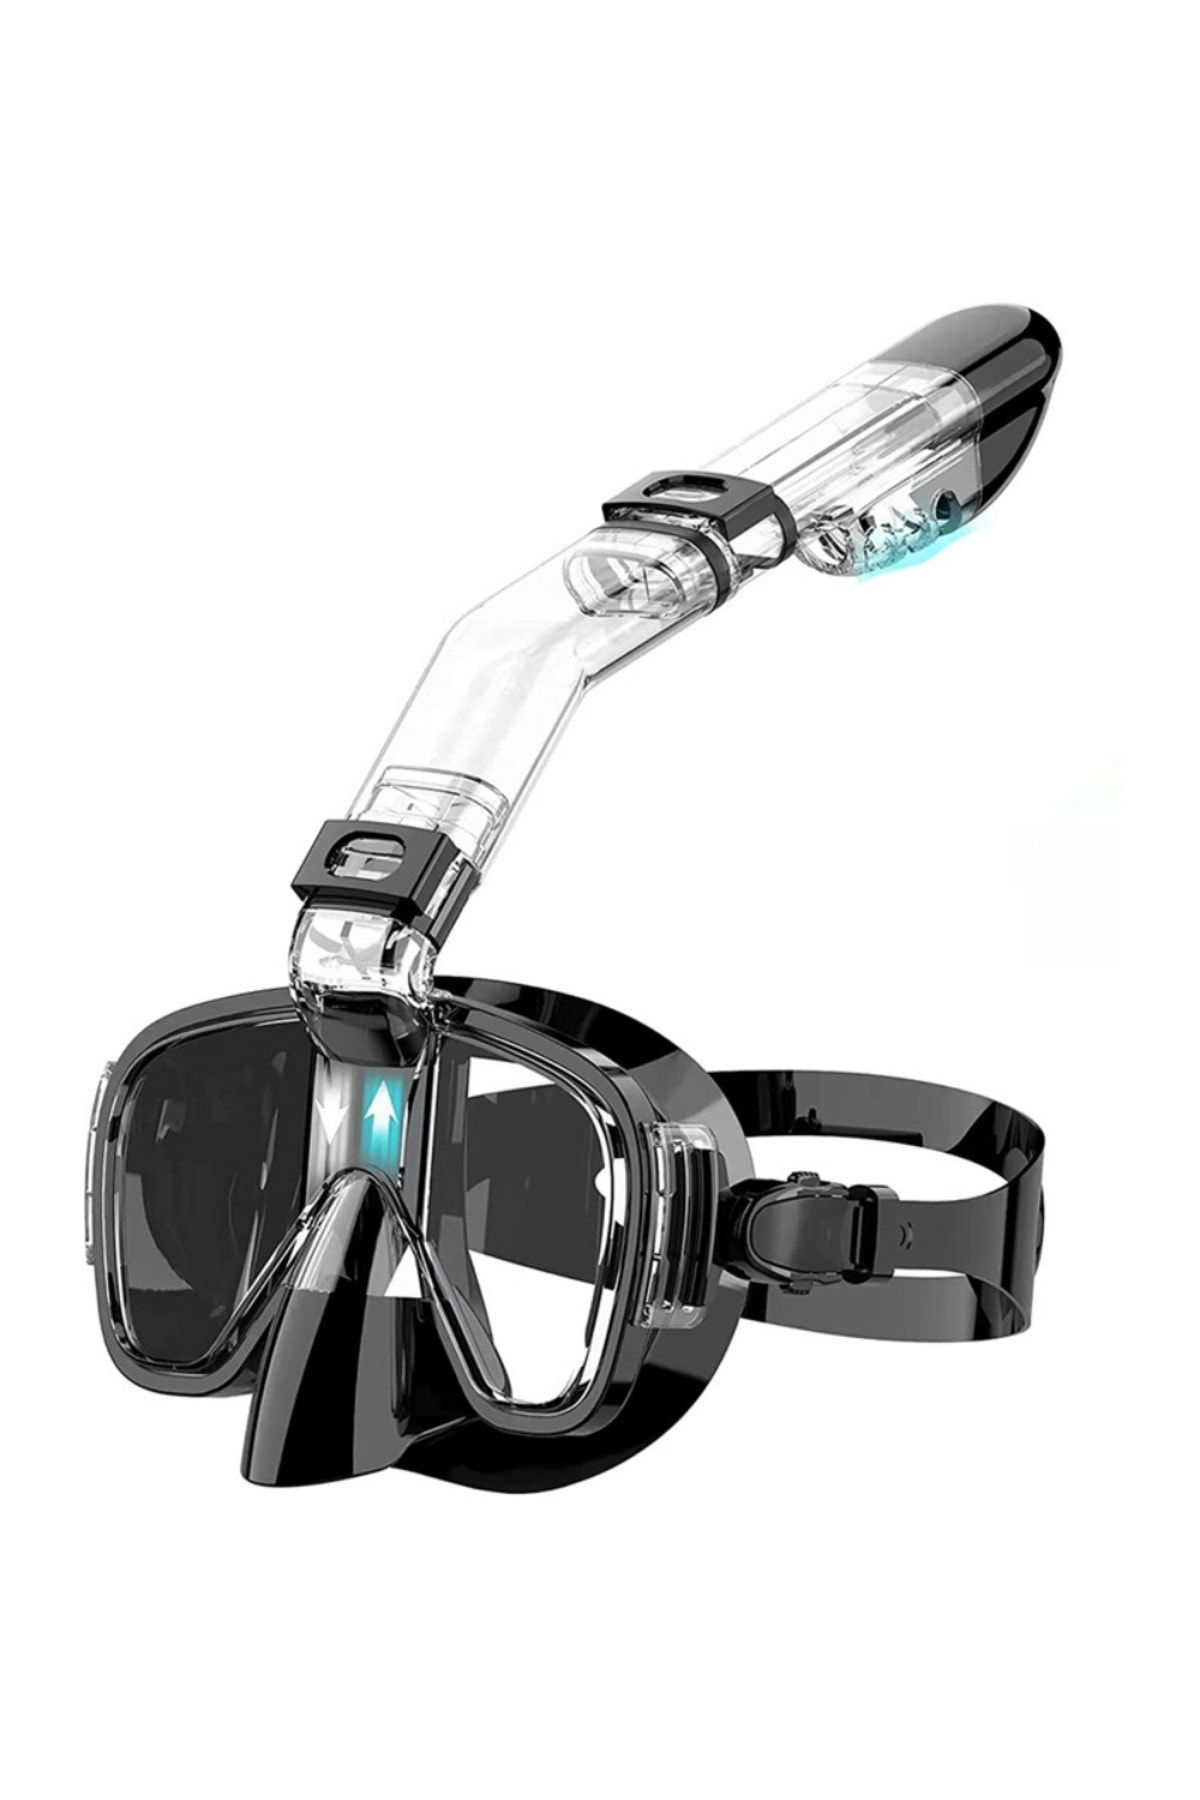 SZ MASTER YeniTech-Şnorkel,katlanabilir profesyonel dalış maskesi,üst sistem ve kamera tutuculu, siyah yüzme